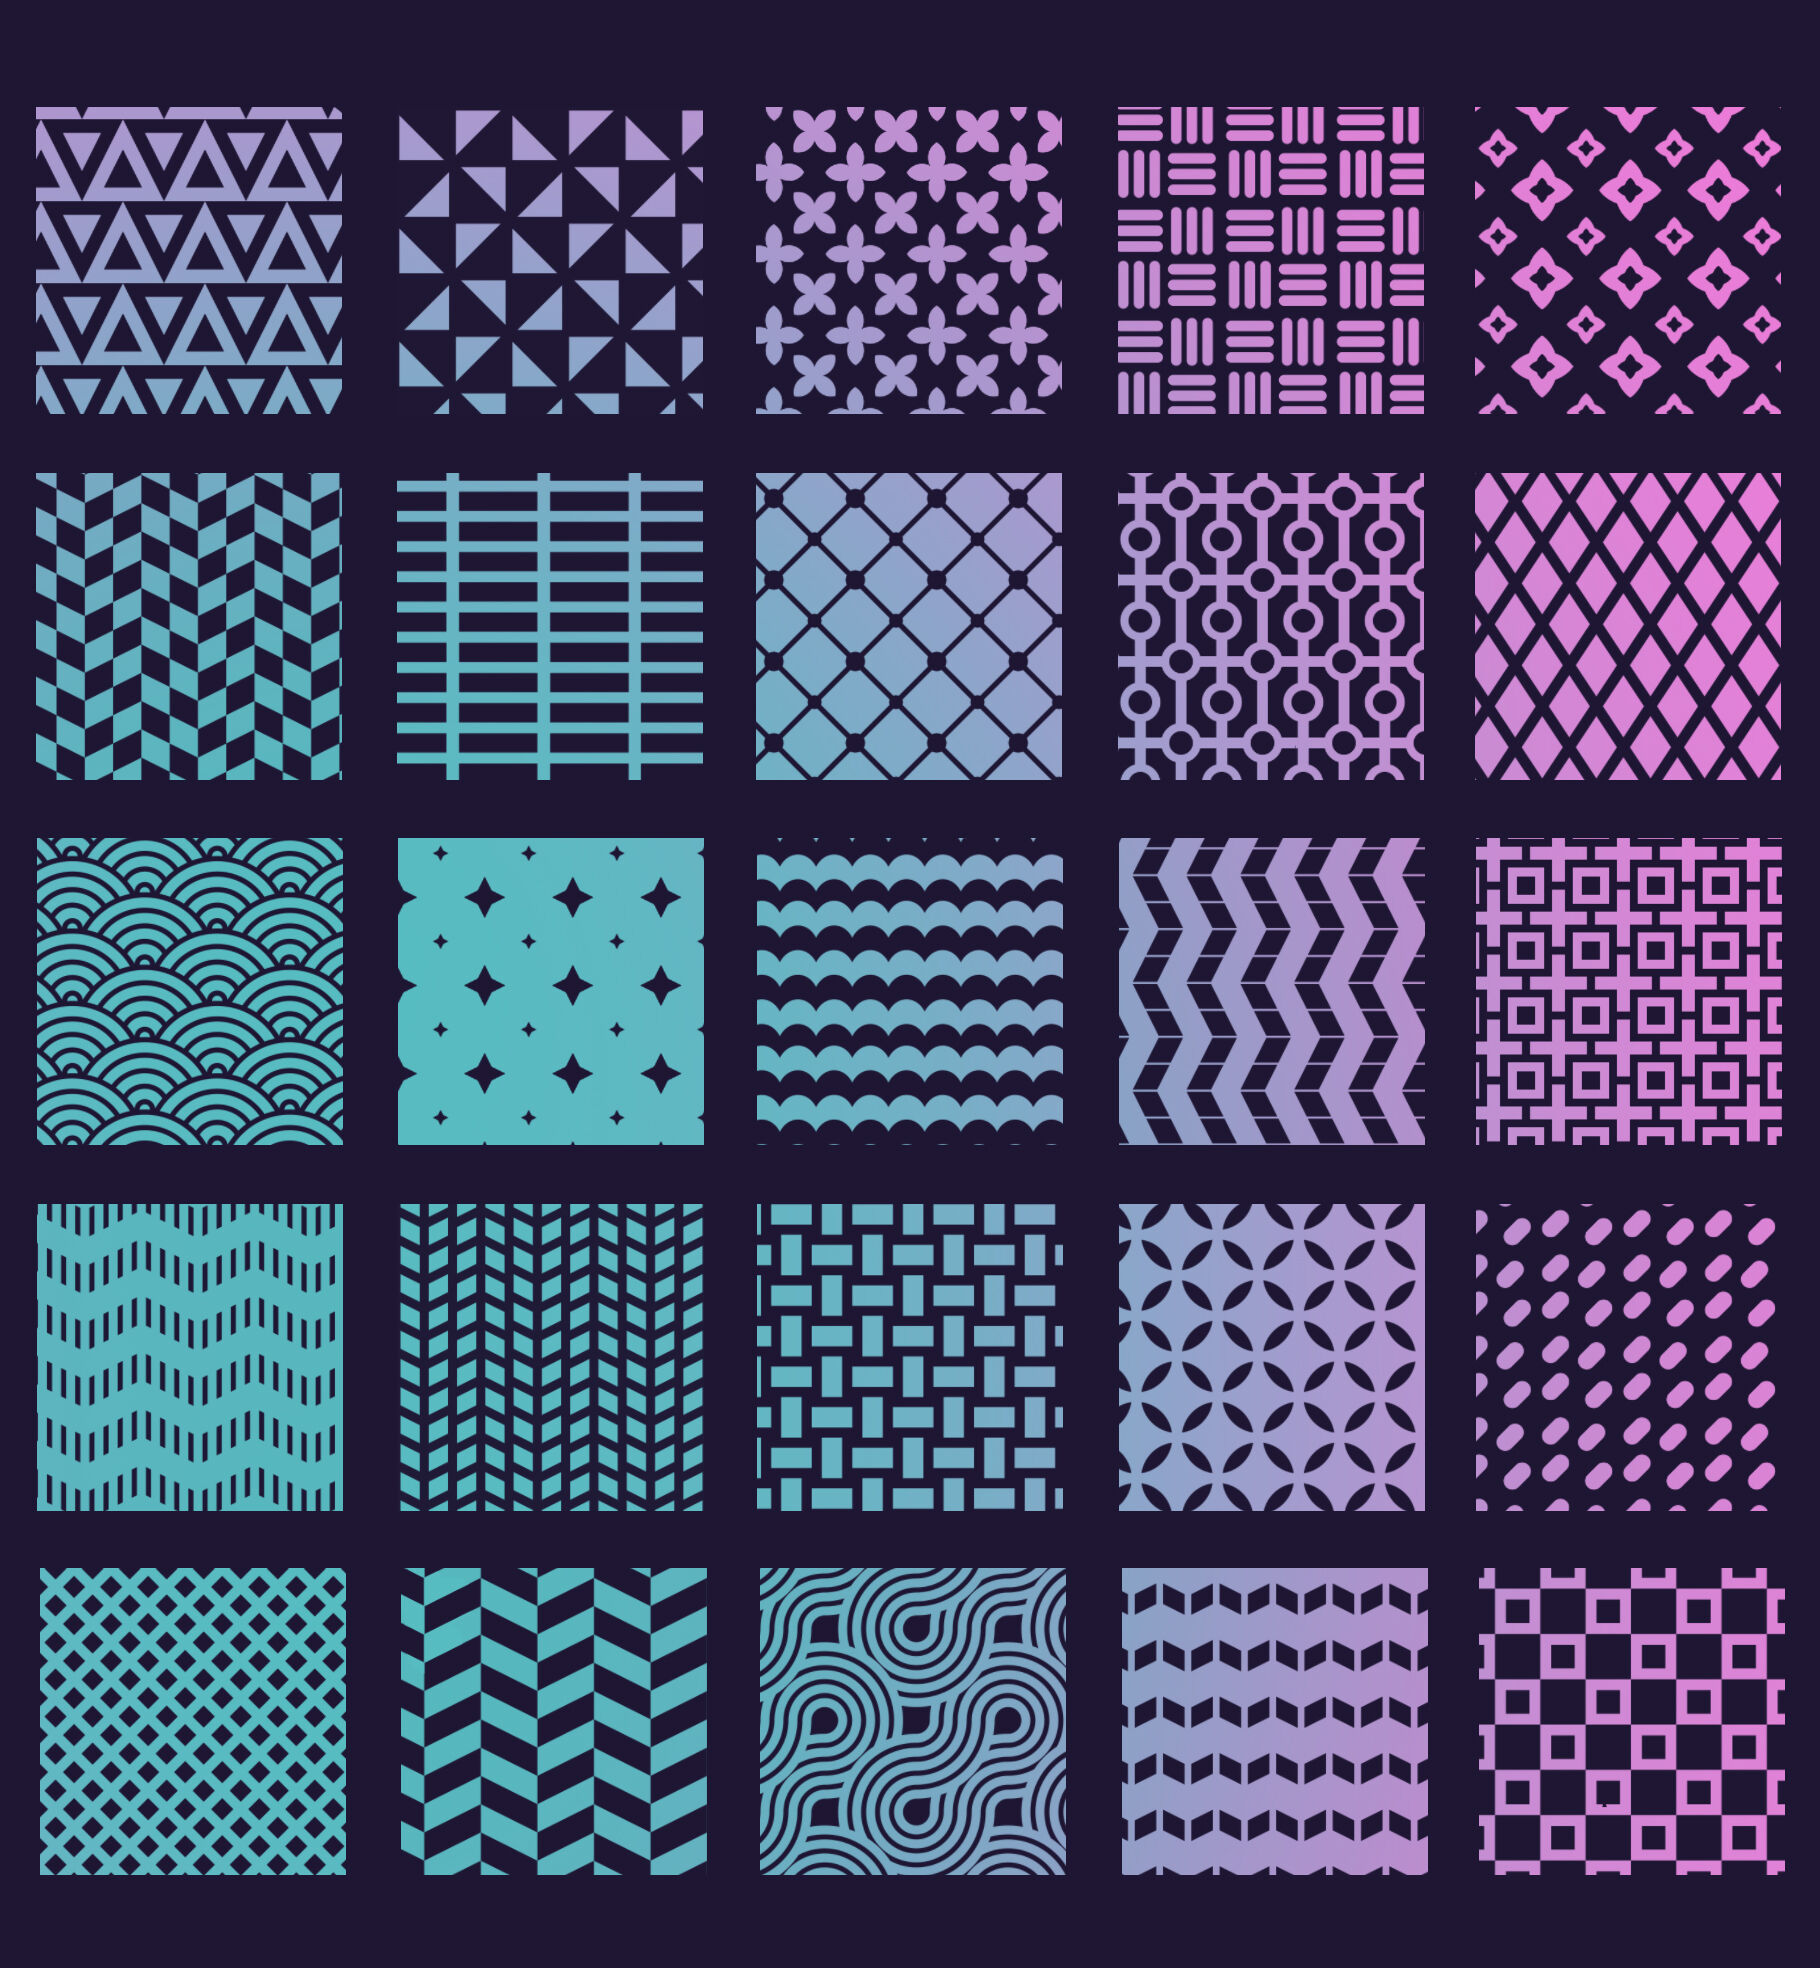 free procreate pattern brushes